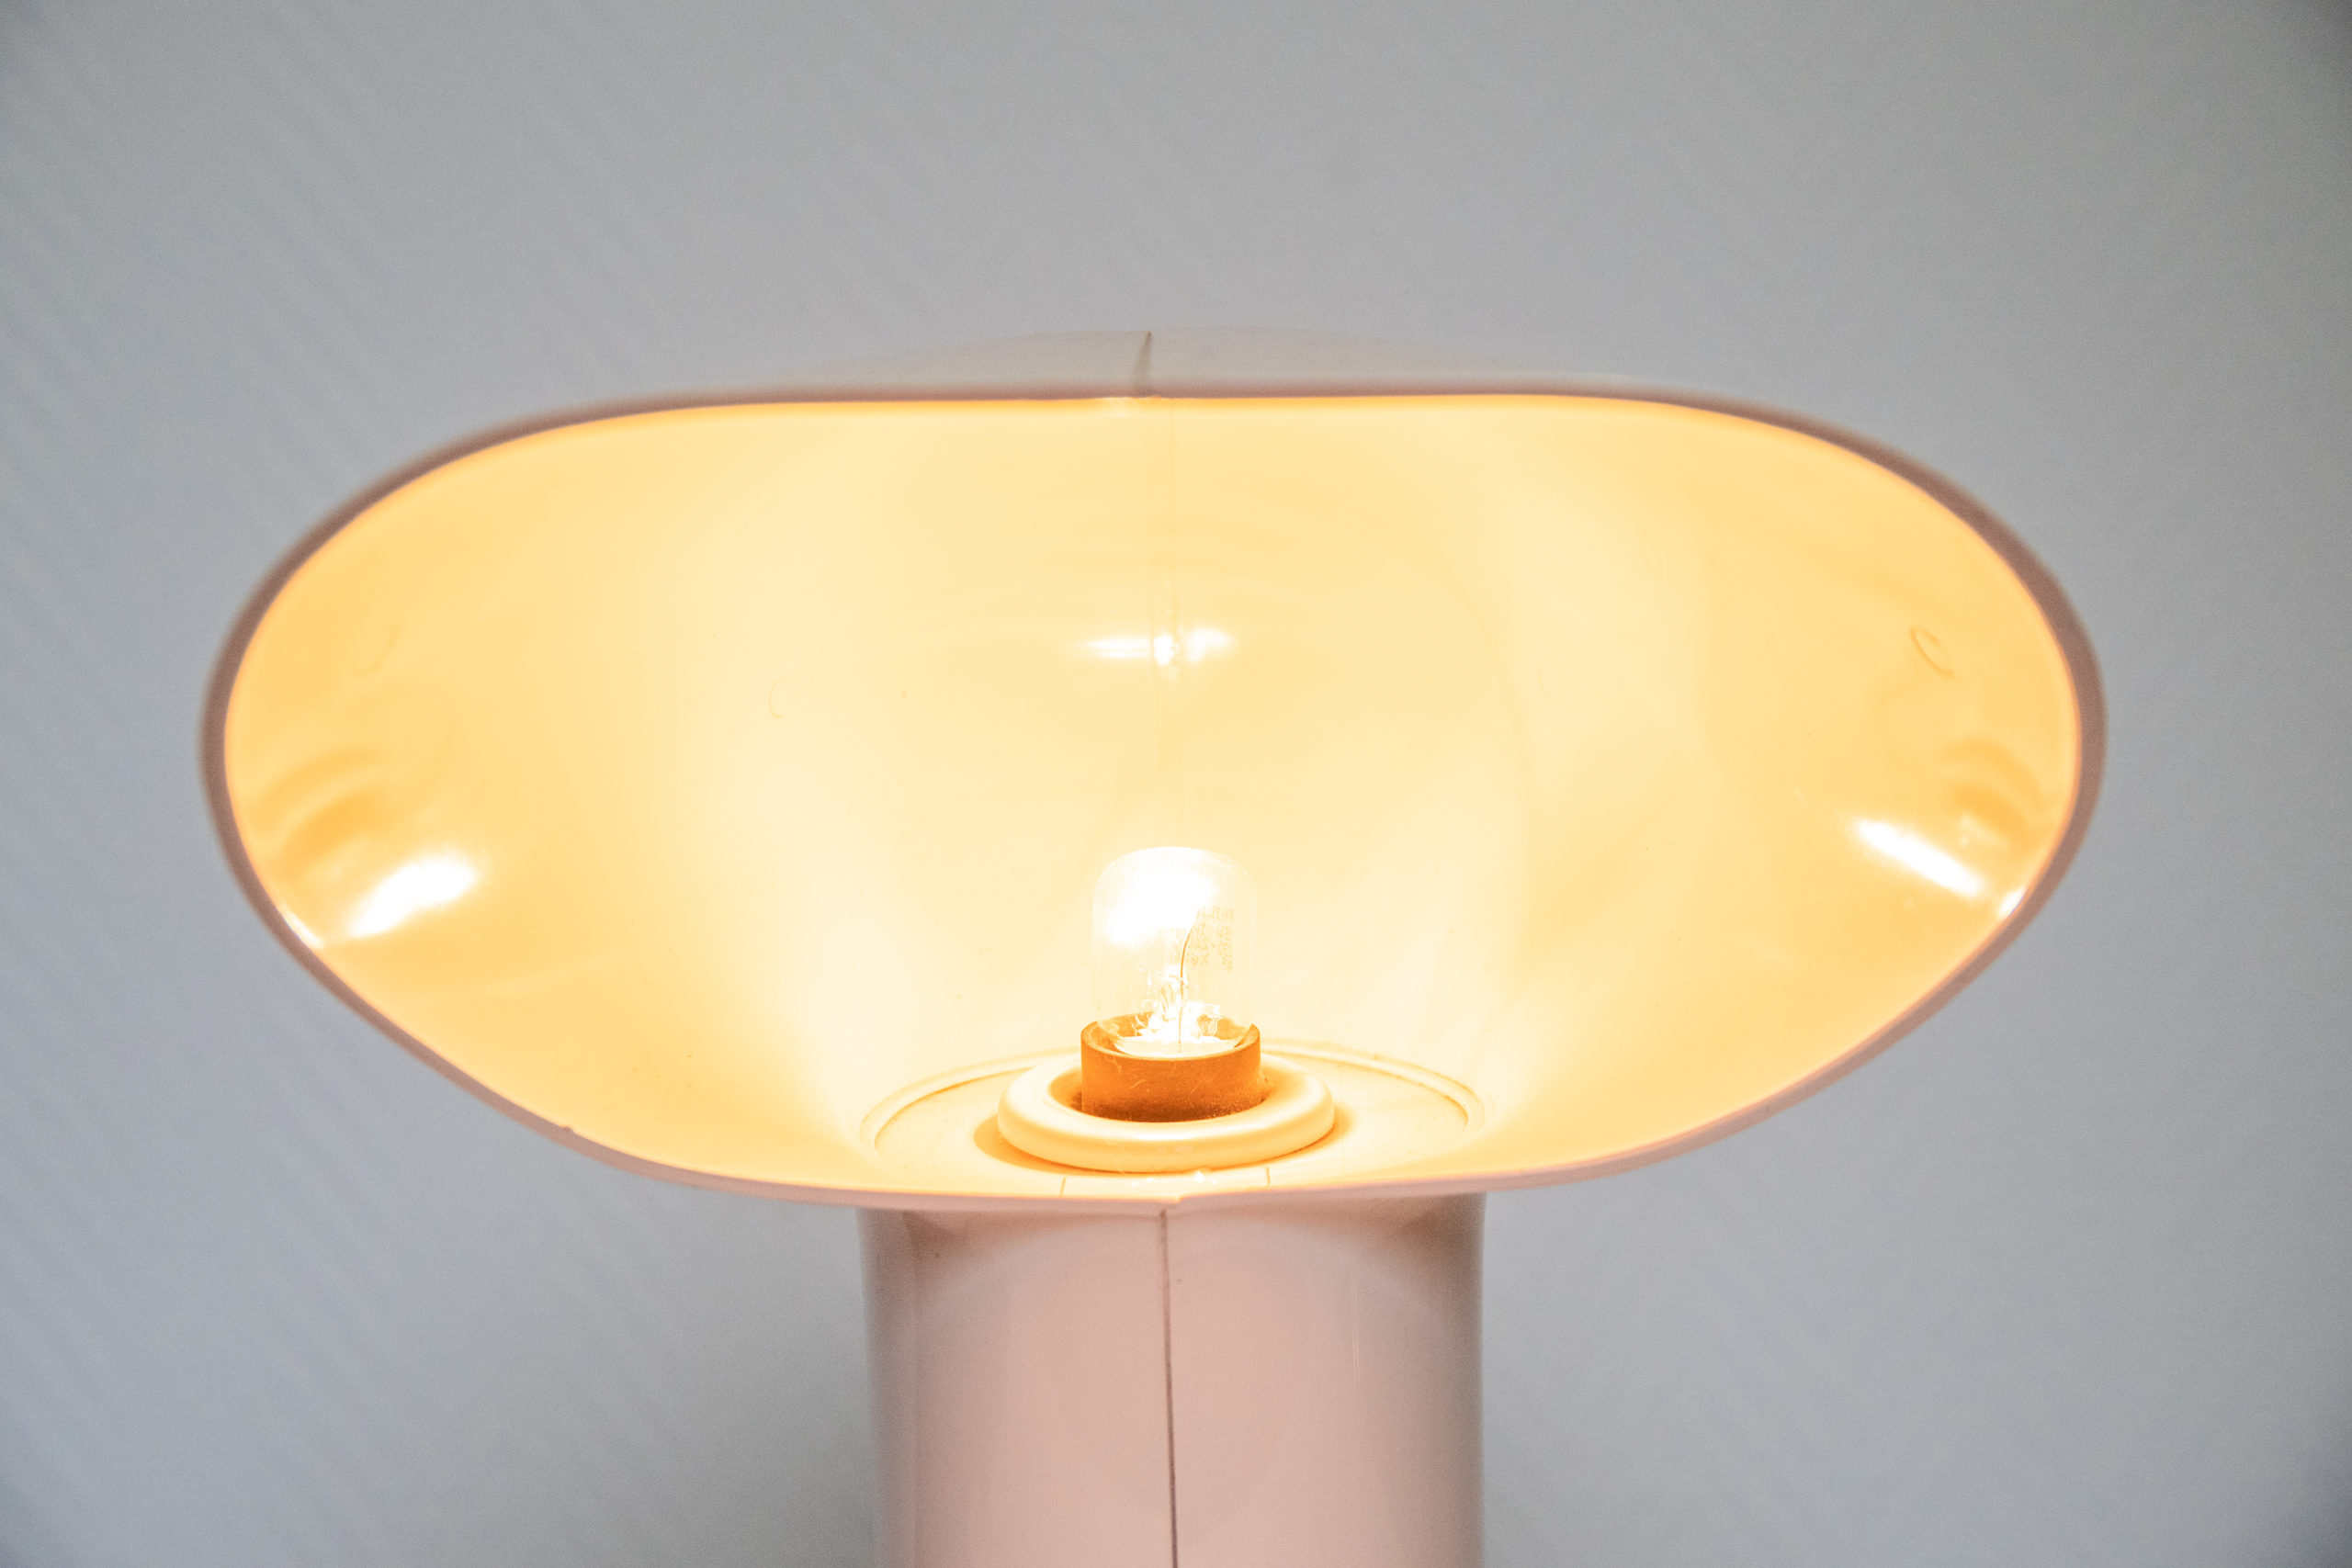 Lampe-sorella-harvey-guzzini-1960-vintage-lampe-décoration-aurore-morisse-antiquaire-loiège-paris-affaire-conclue2